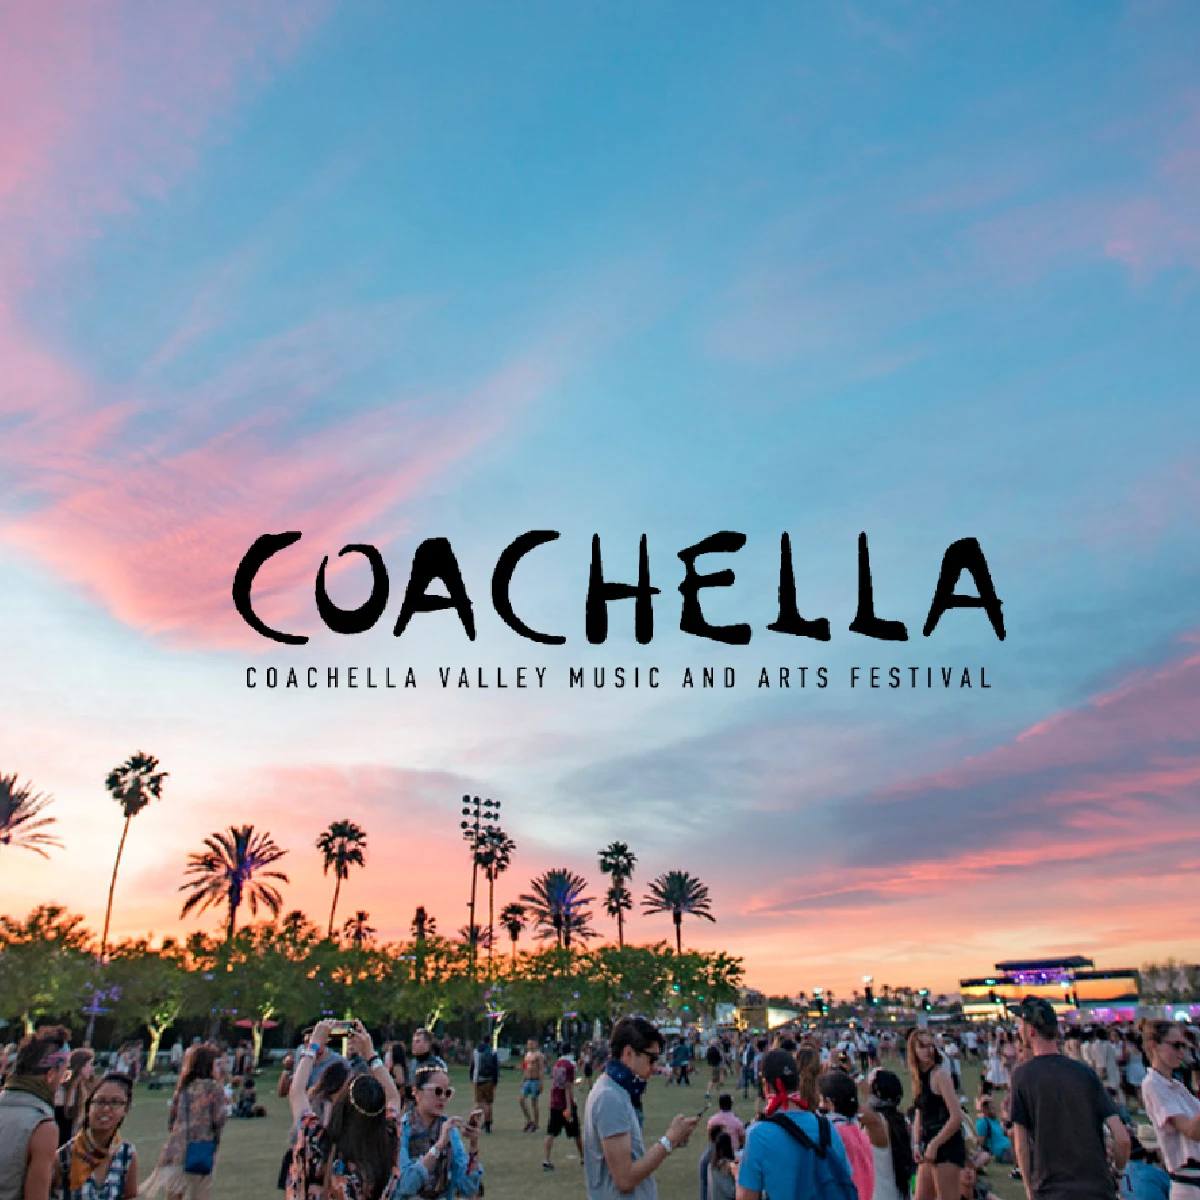 I migliori festival primaverili del mondo Coachella - USA/California